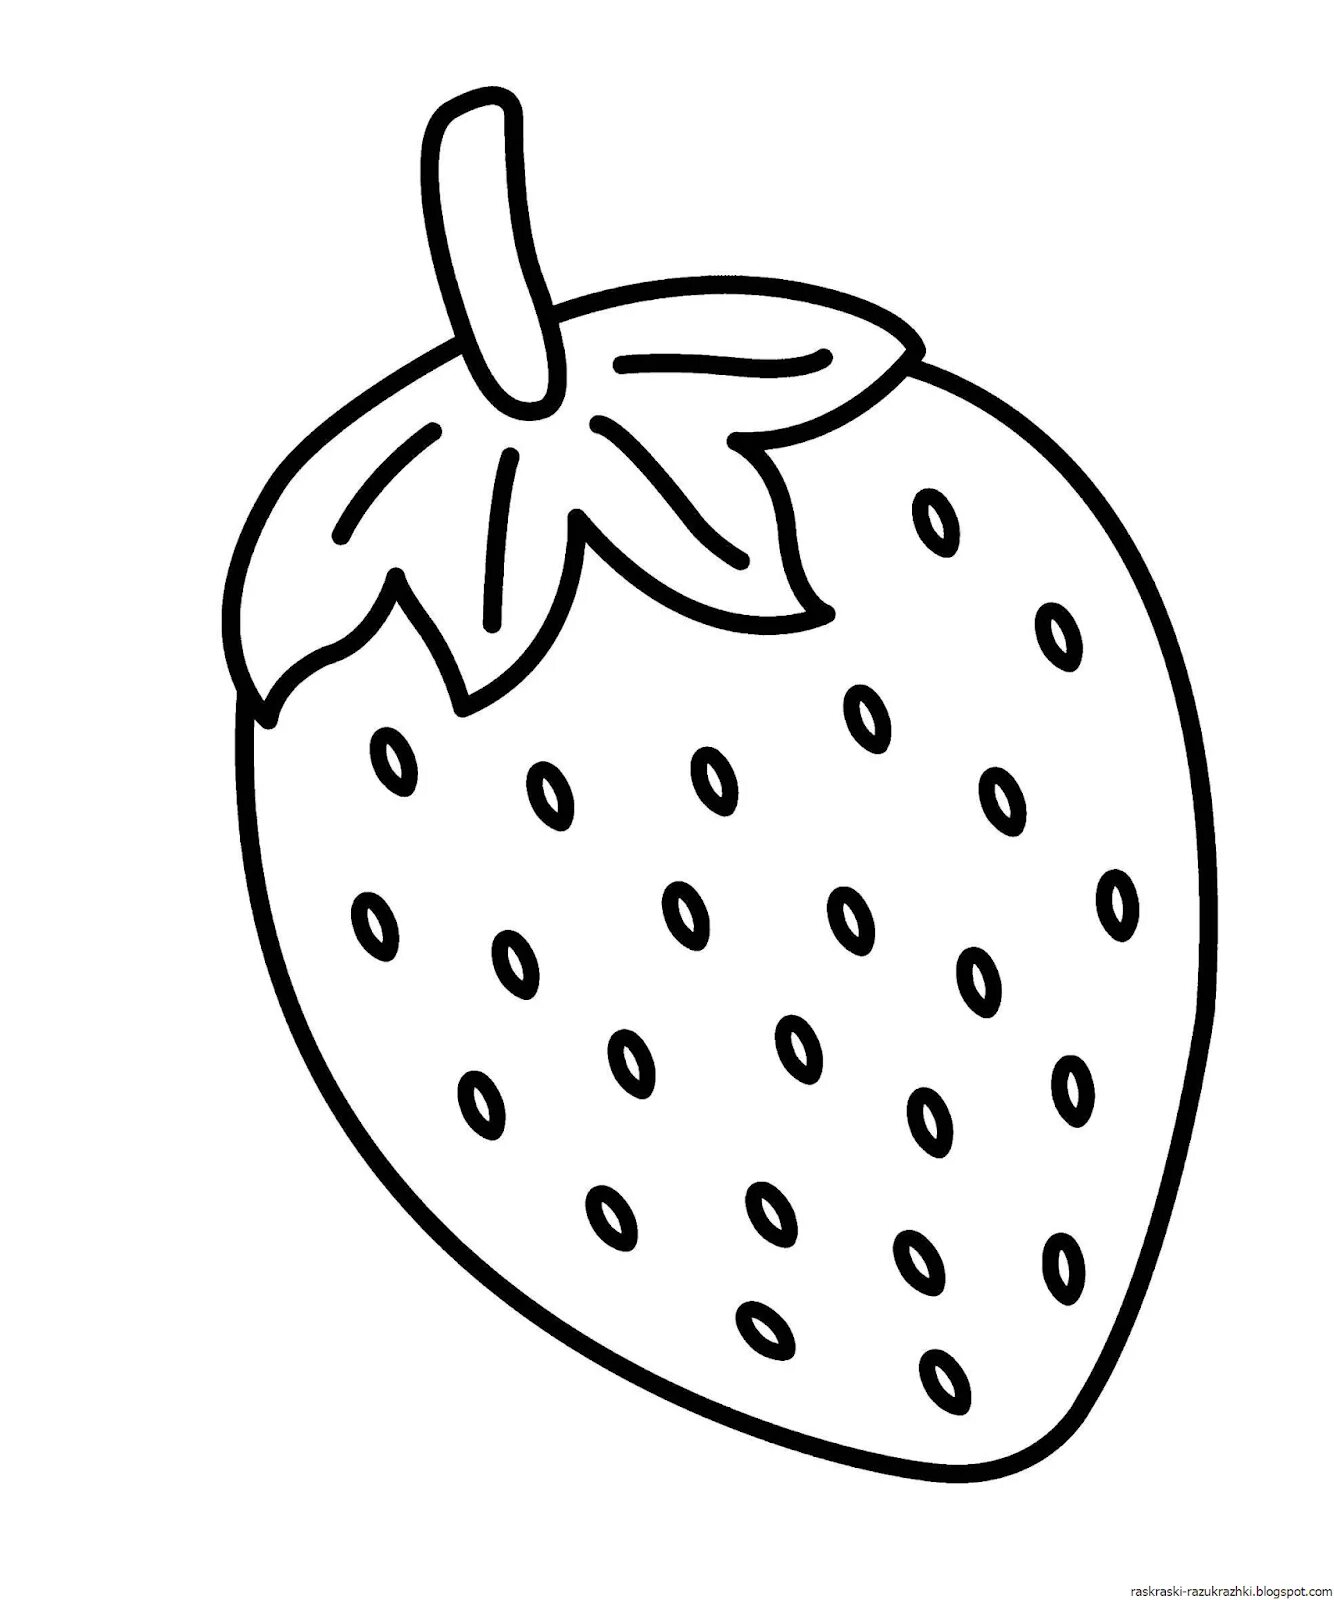 Fruit art drawing